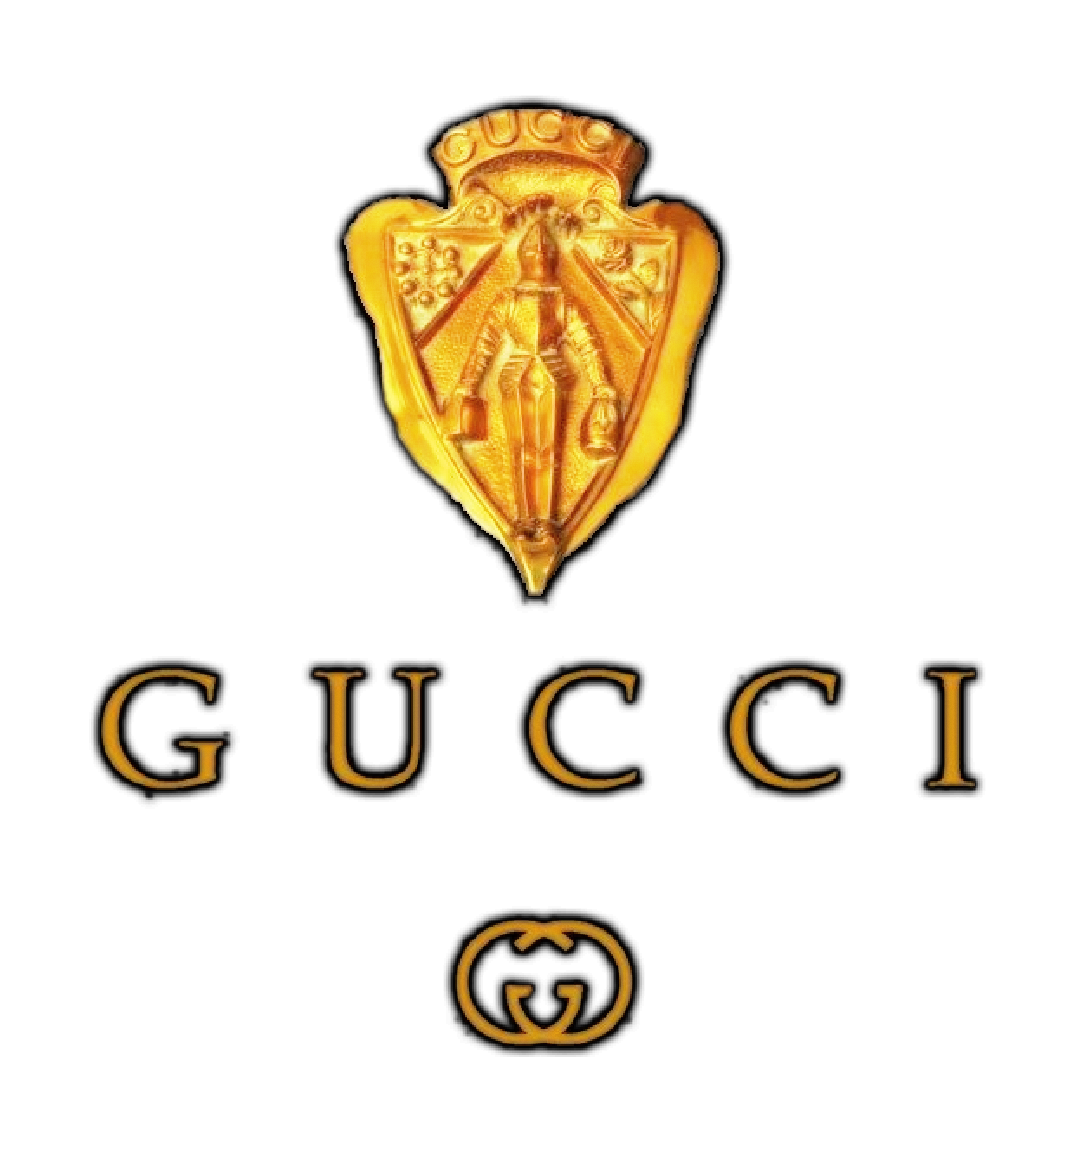 Gucci Gold Logotipo PNG image